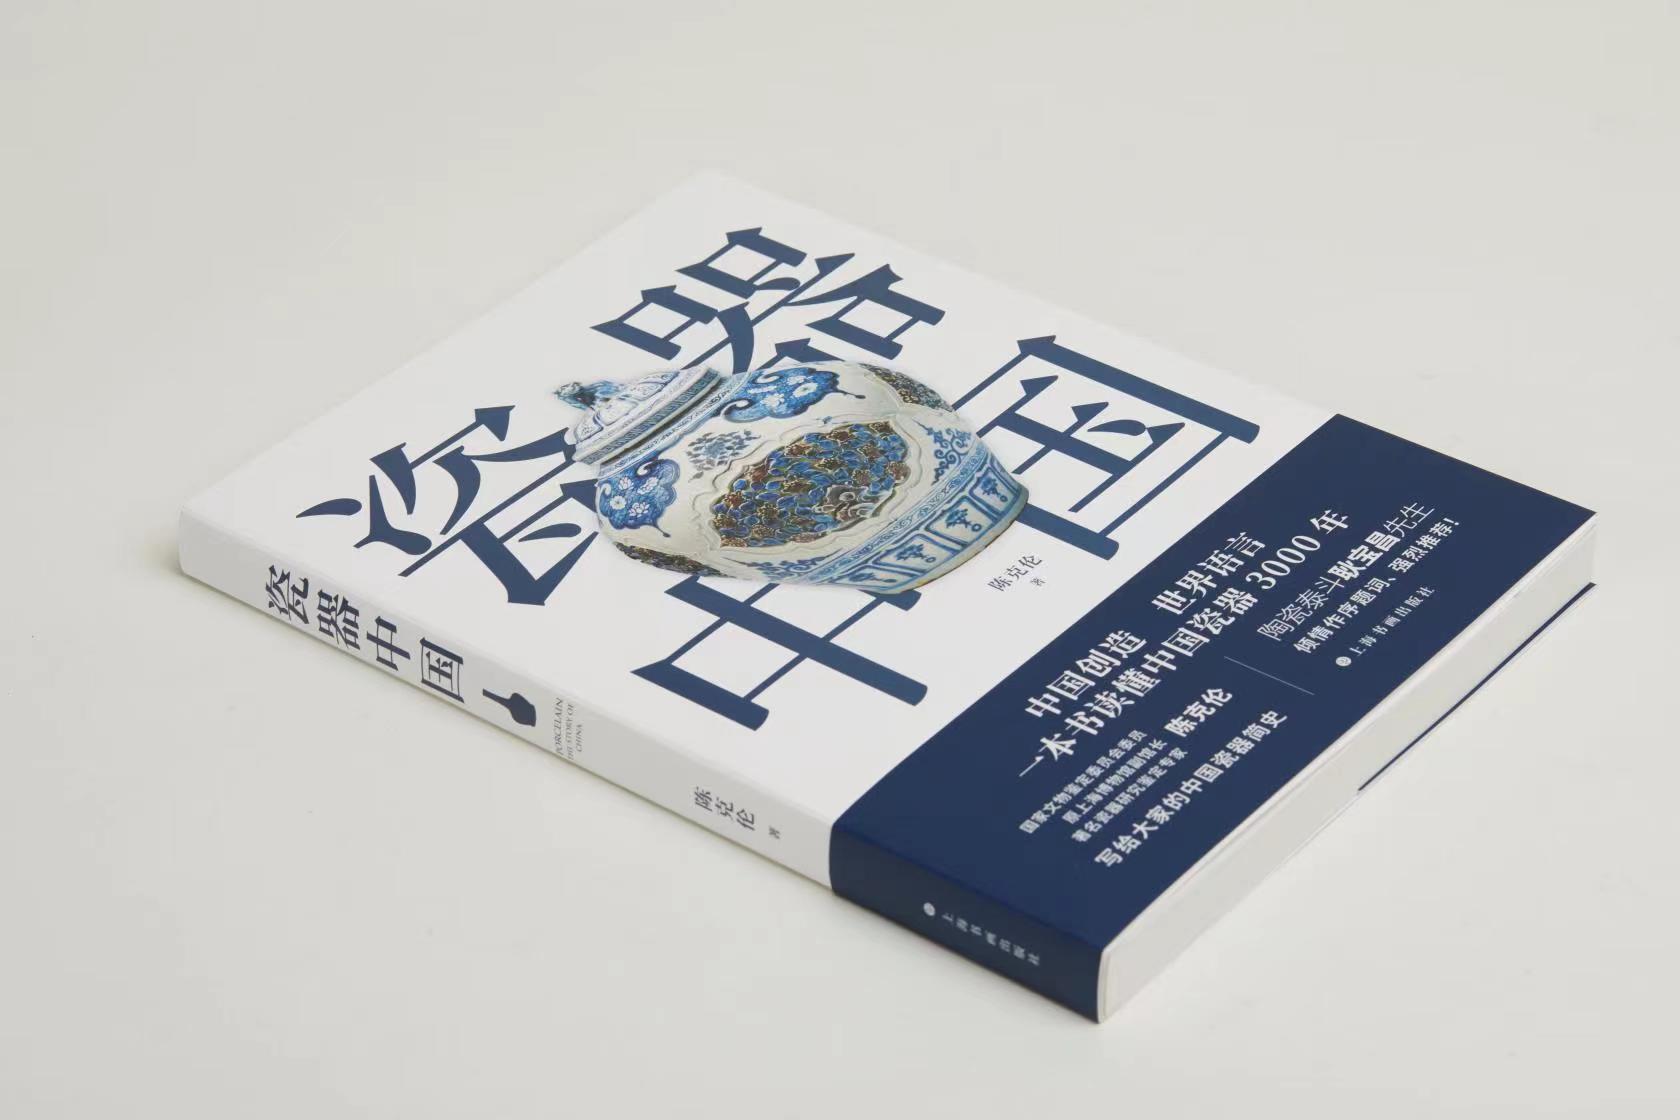 《瓷器中国》 陈克伦著 上海书画出版社出版